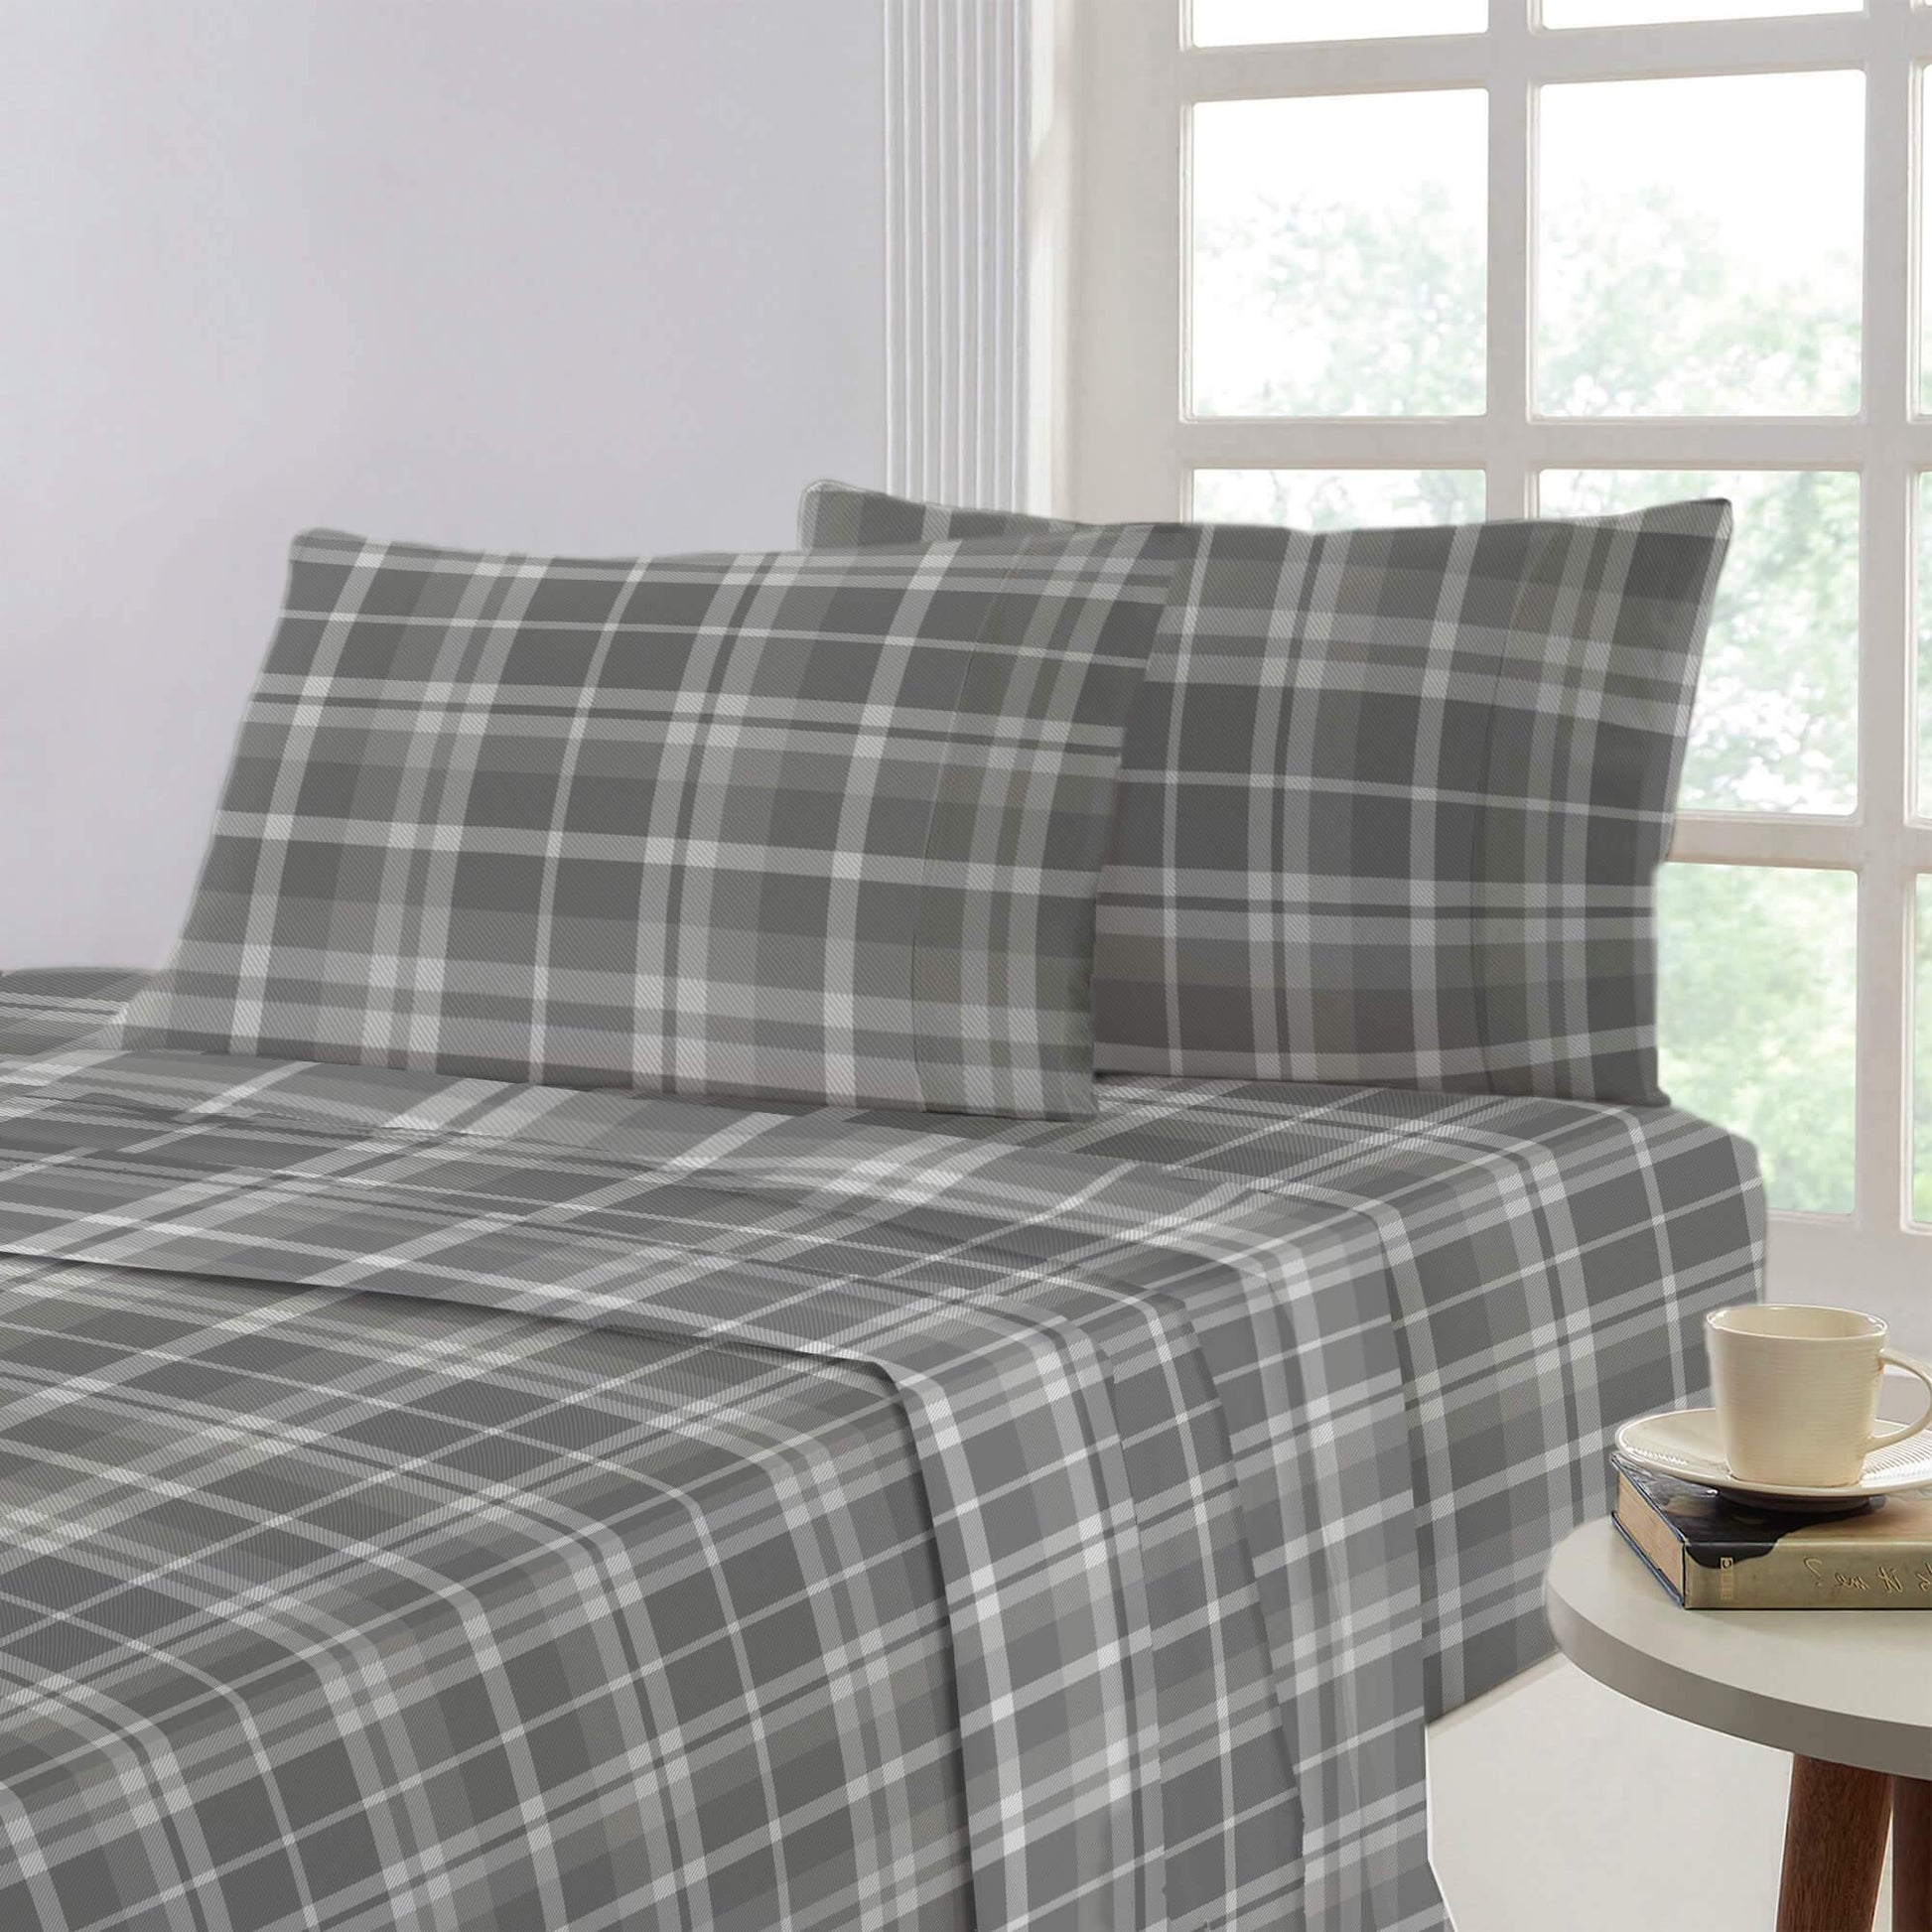 Lavish Touch 100% Cotton King Bed 4pc Sheet Set - Checks - Kea Global